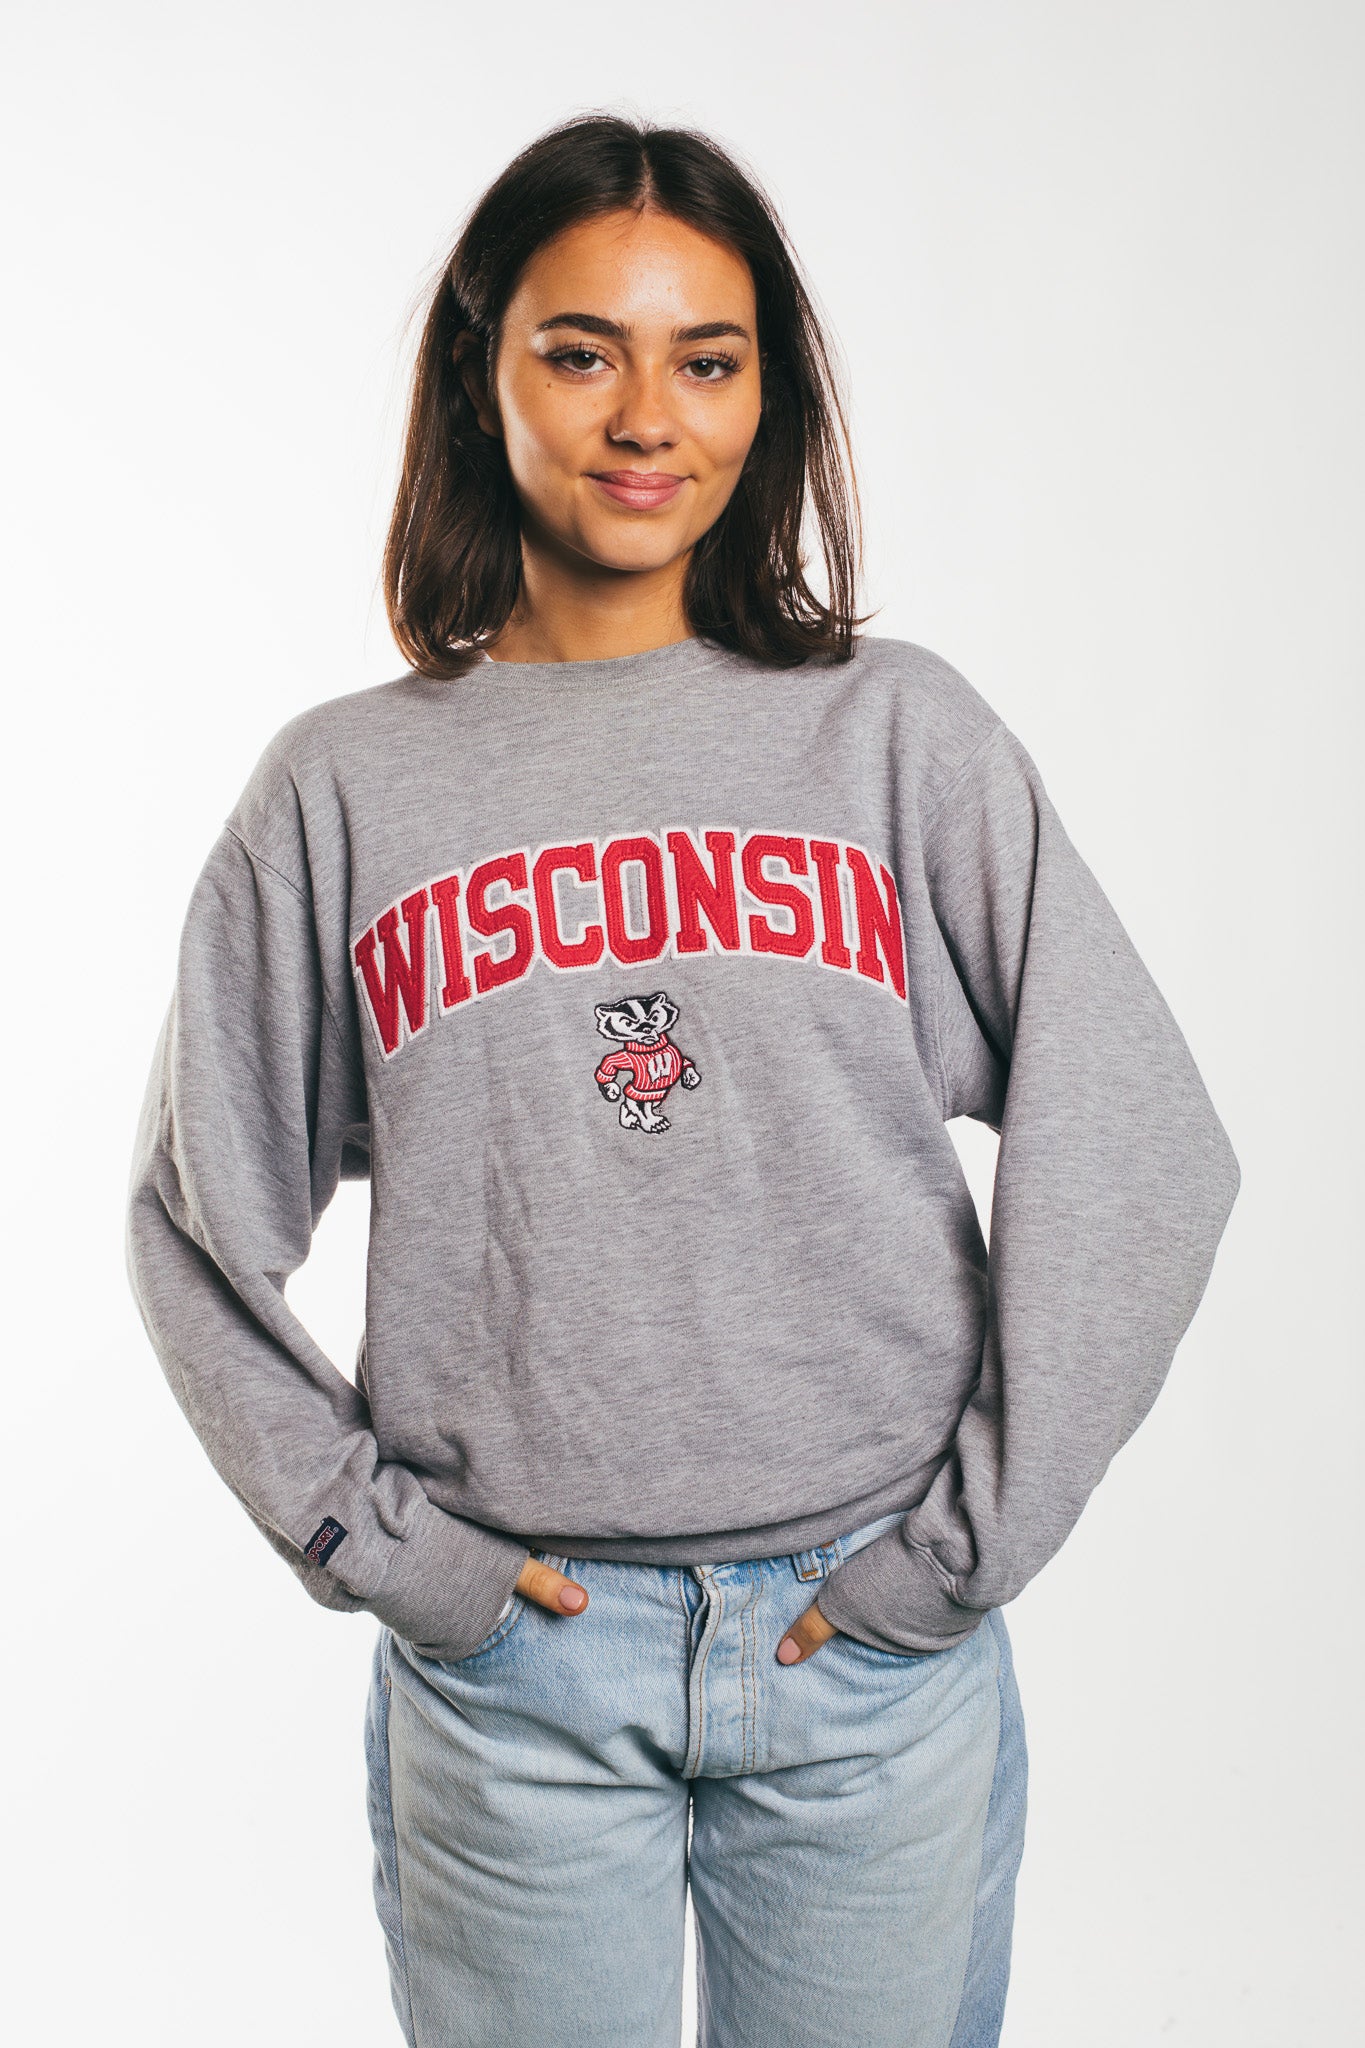 Wisconsin - Sweatshirt